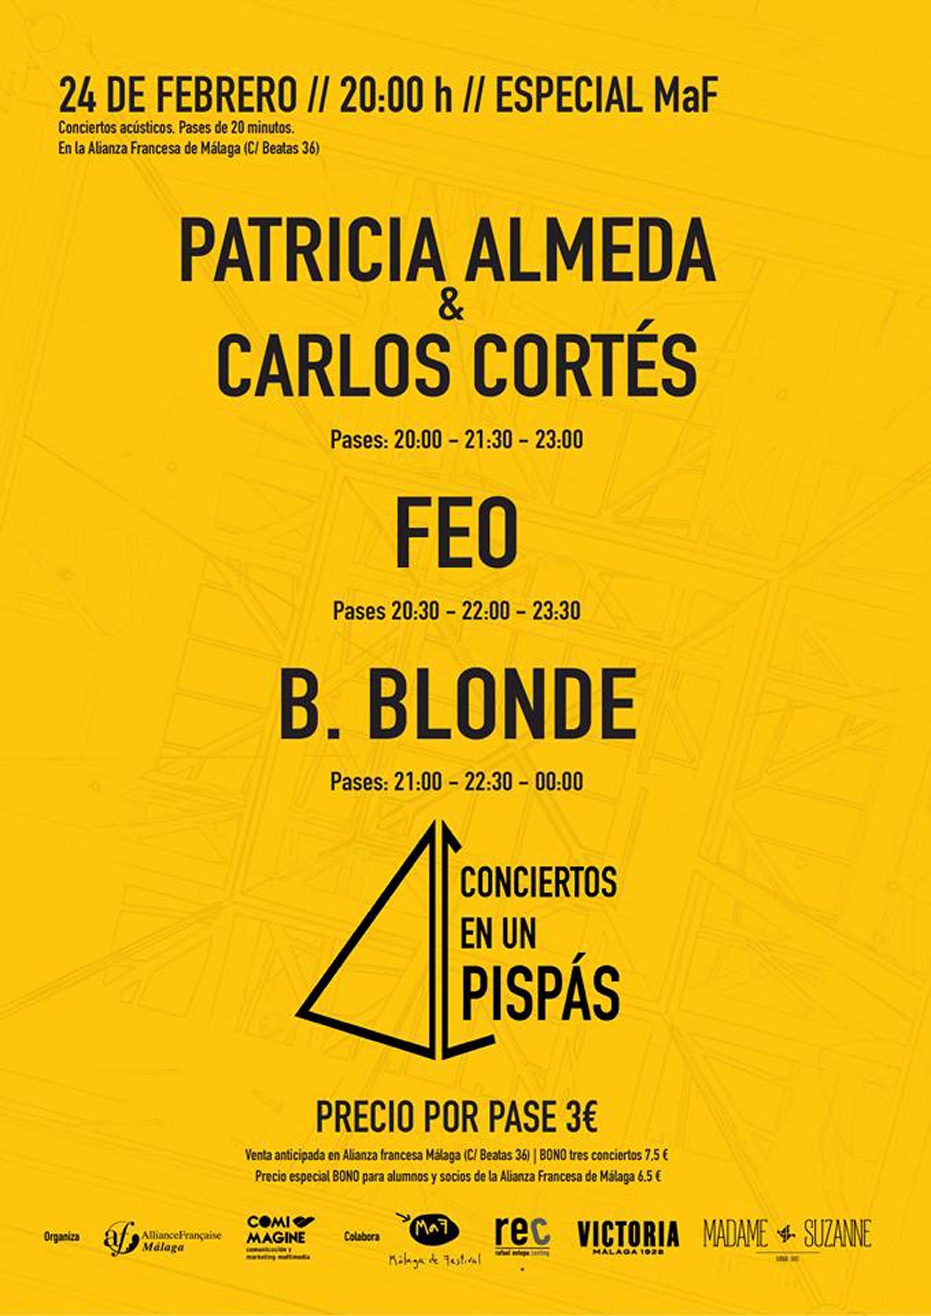 Conciertos en un Pispás: Patricia Almeda y Carlos Cortés, Feo y B. Blonde